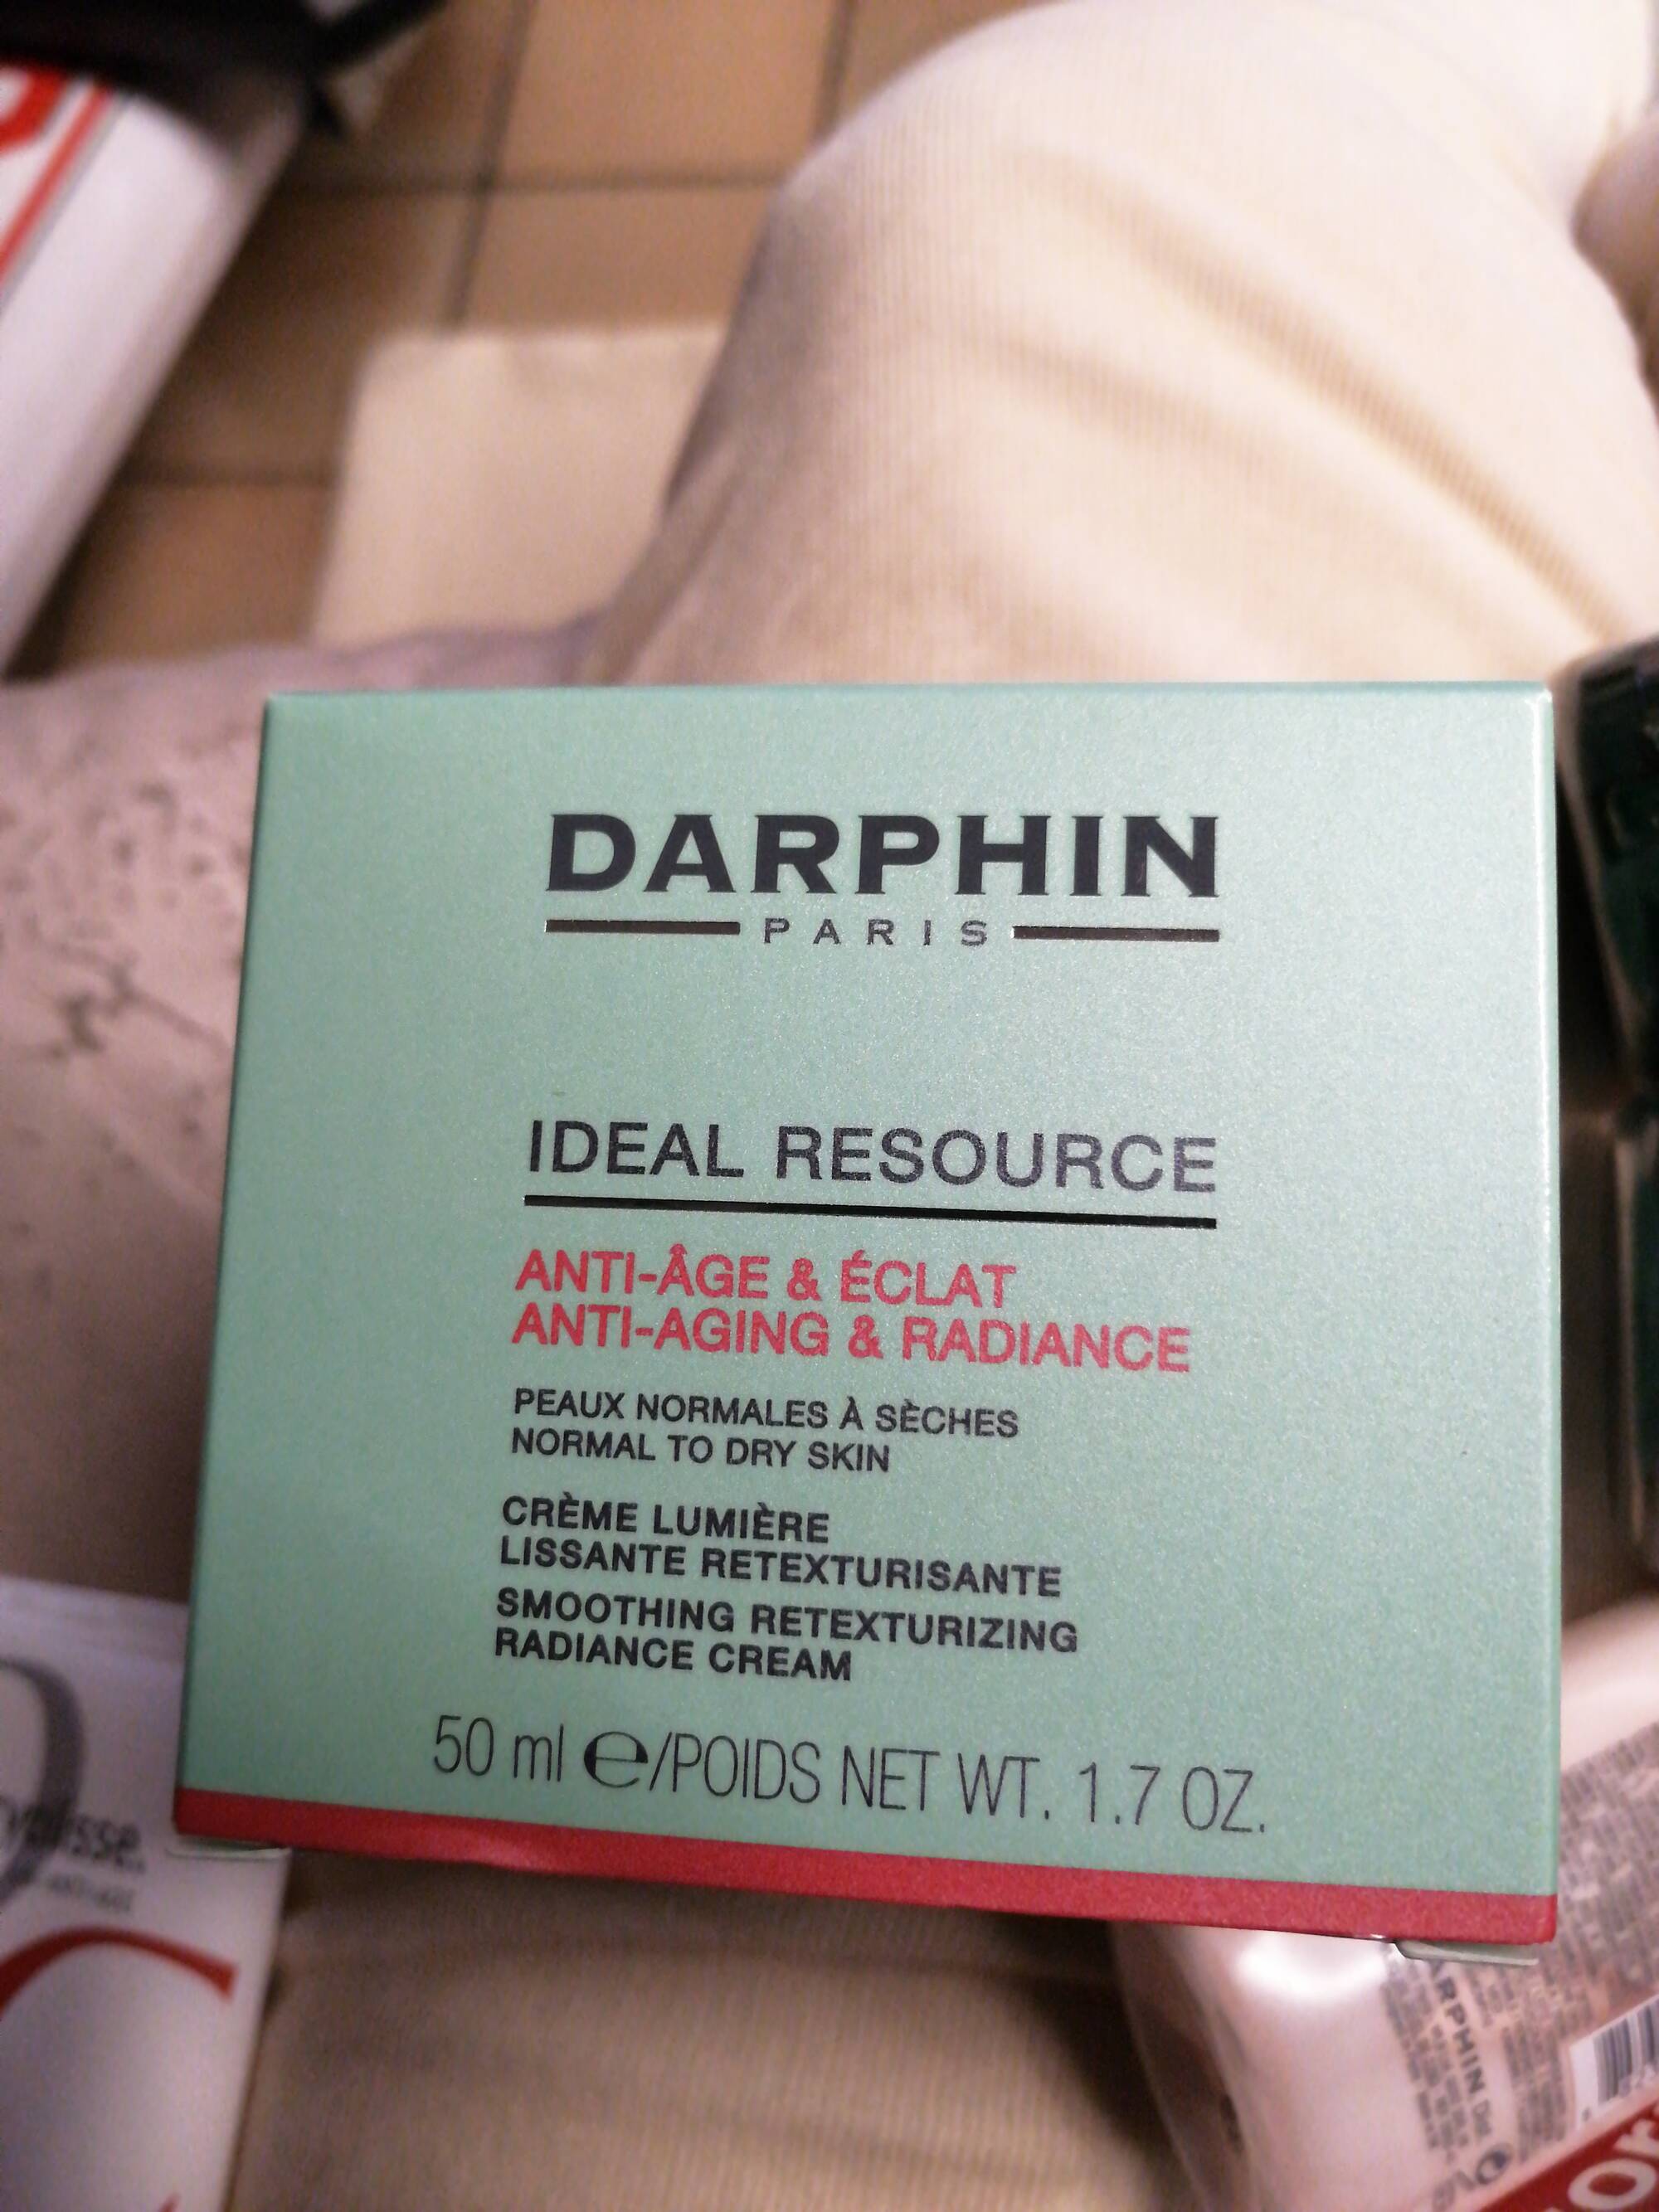 DARPHIN - Ideal ressource Anti-âge & Éclat - Crème lumière lissante retexturisante